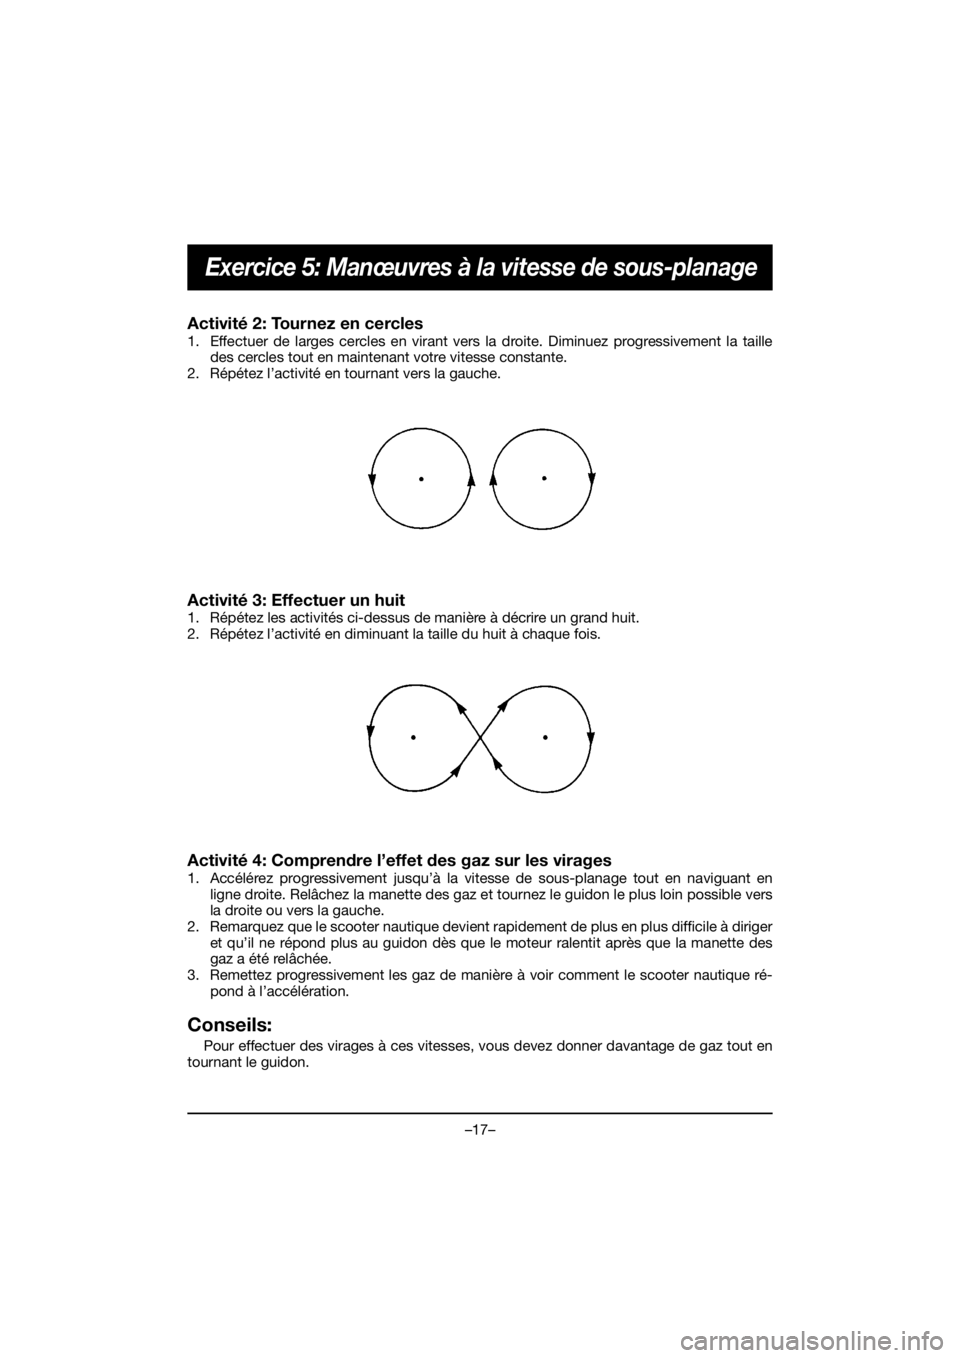 YAMAHA VX DELUXE 2020  Bruksanvisningar (in Swedish) –17–
Exercice 5: Manœuvres à la vitesse de sous-planage
Activité 2: Tournez en cercles 
1. Effectuer de larges cercles en virant vers la droite. Diminuez progressivement la taille
des cercles t